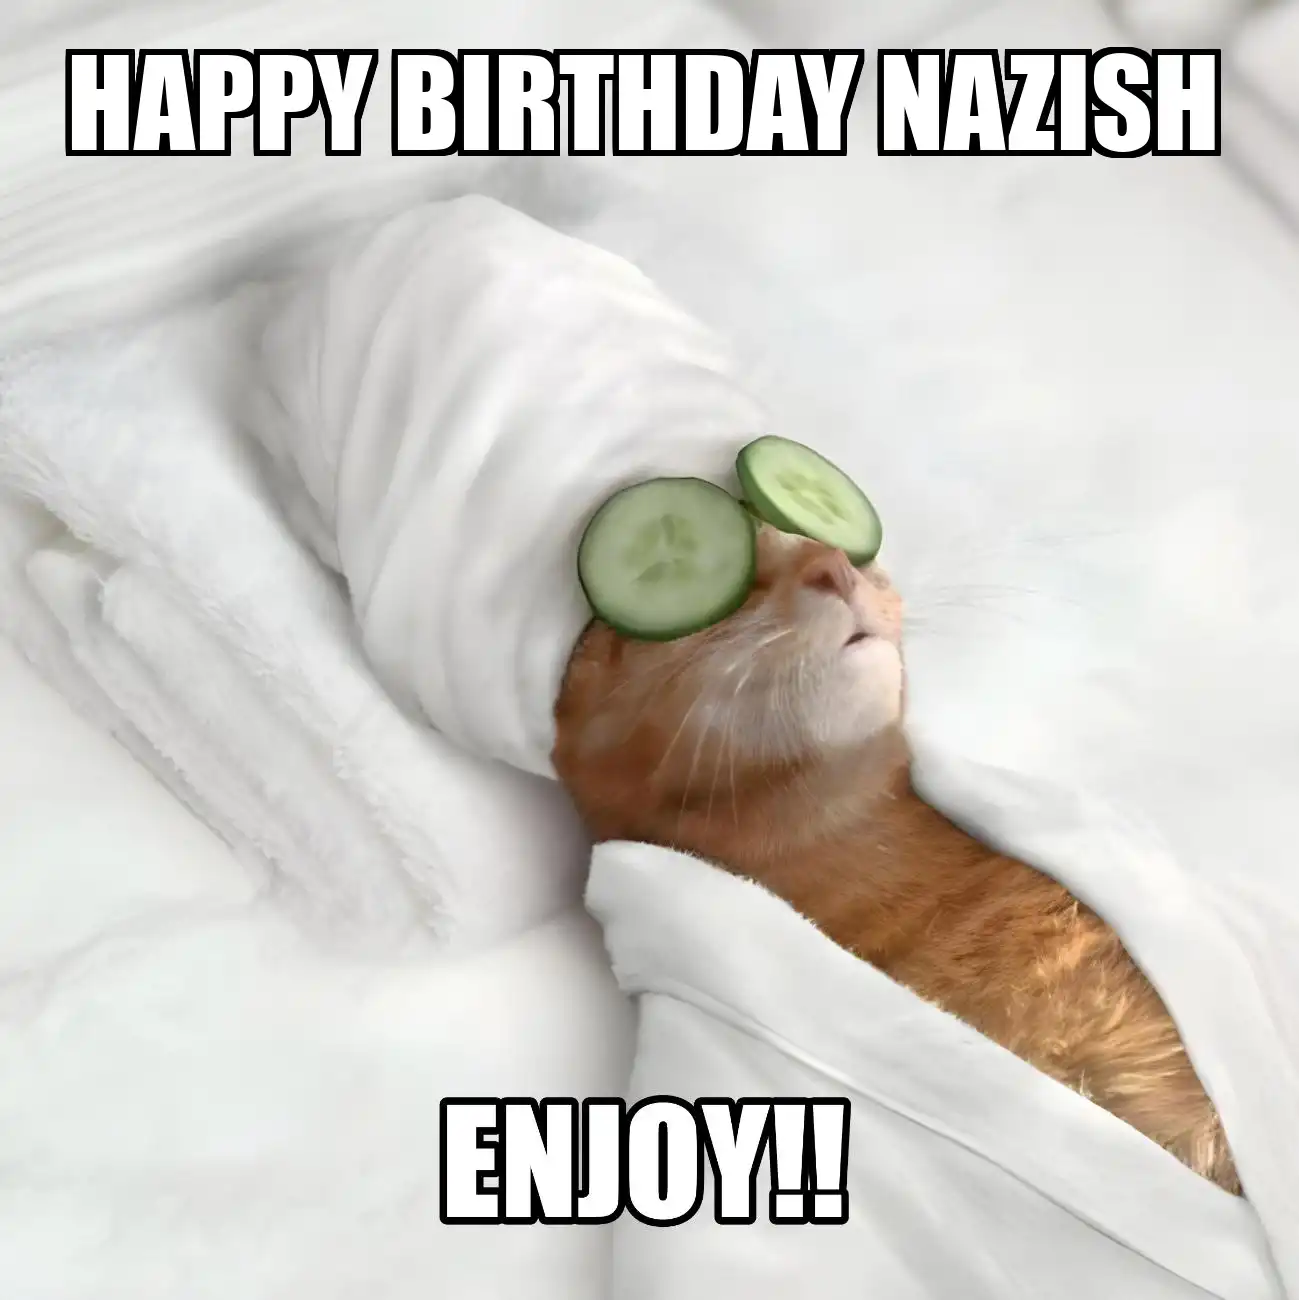 Happy Birthday Nazish Enjoy Cat Meme